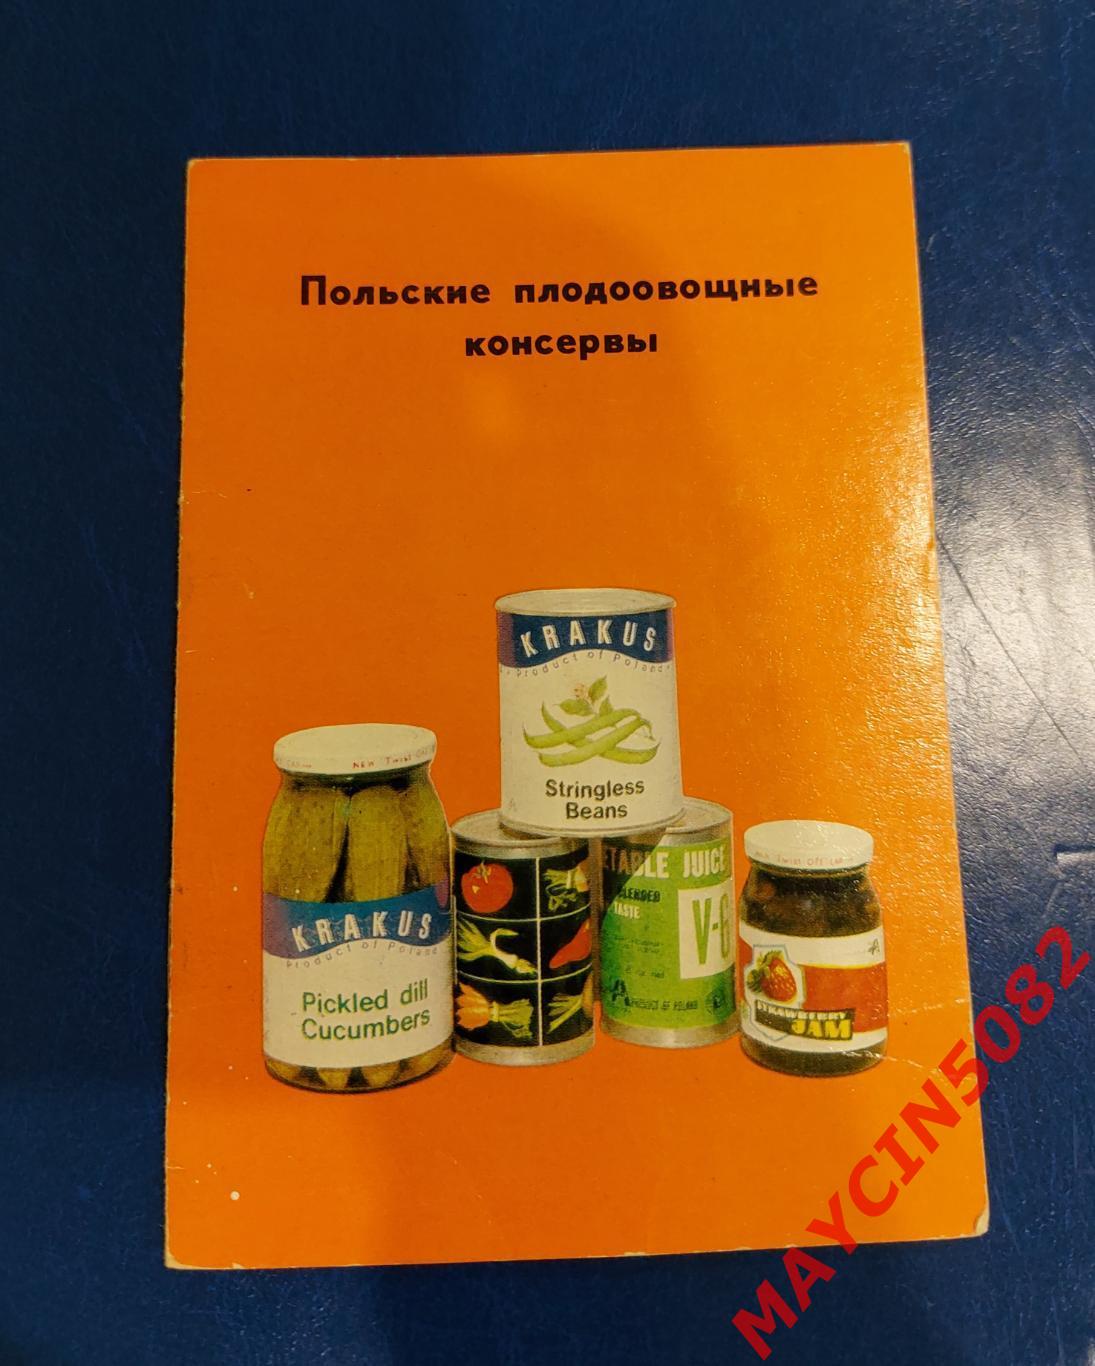 Памятка. Польские плодоовощные консервы. 1968 год.